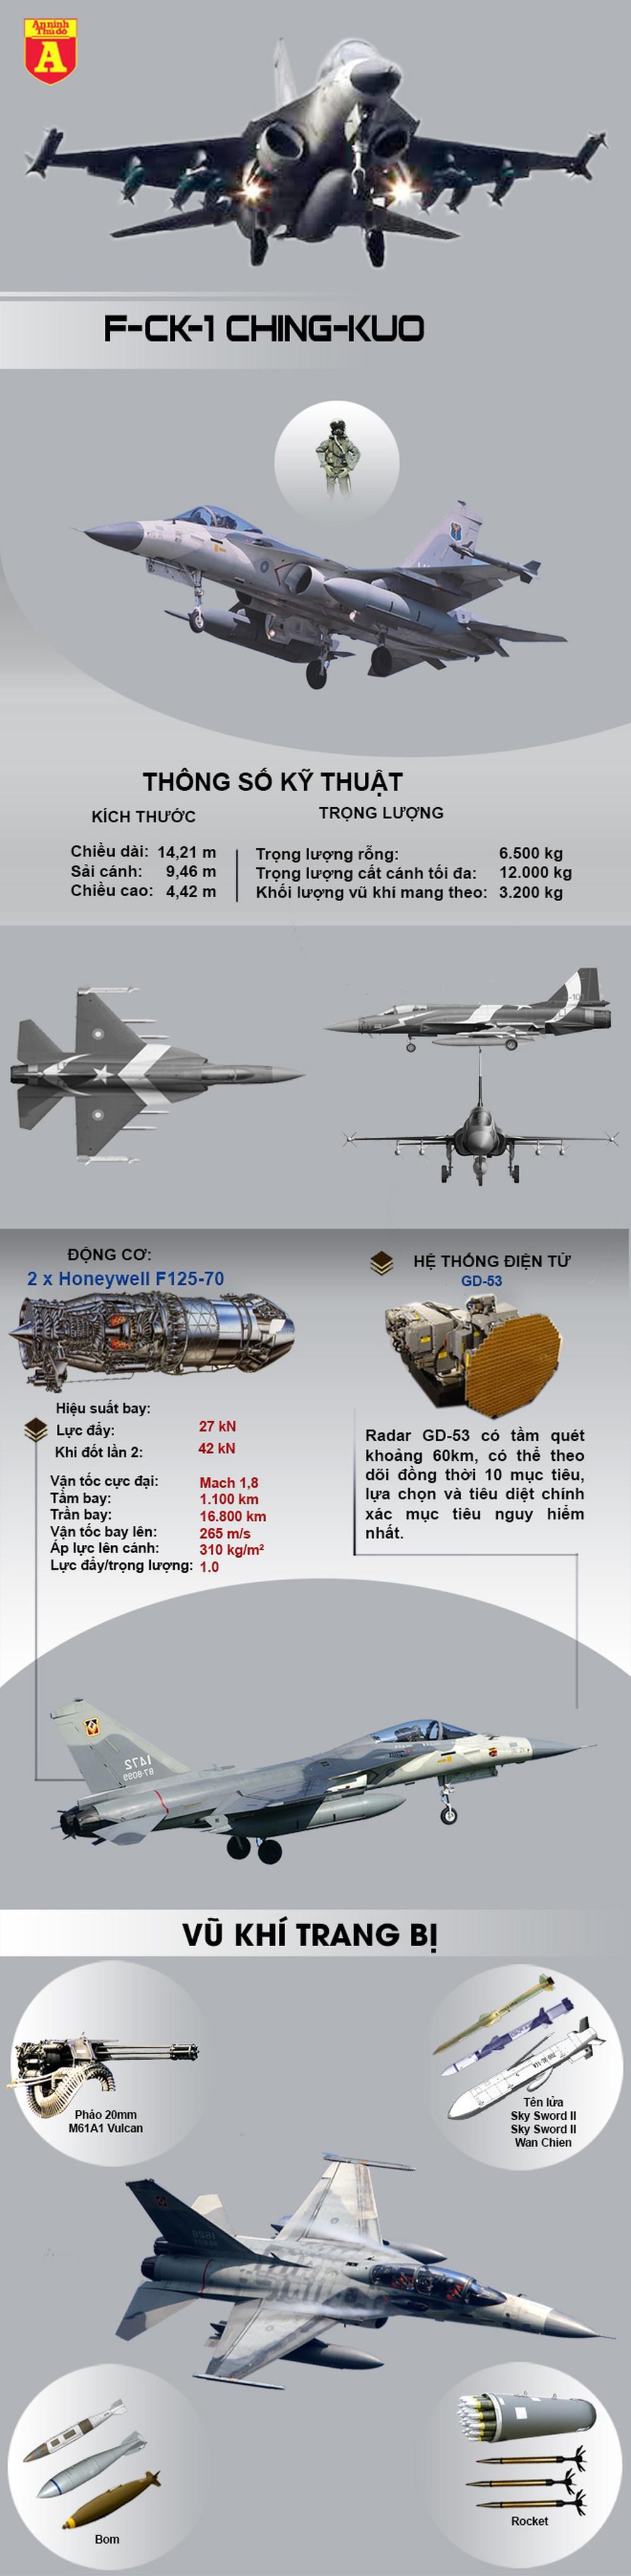 [Infographics] F-CK-1 Đài Loan xuất kích cường độ cao, sẵn sàng chiến đấu  - Ảnh 1